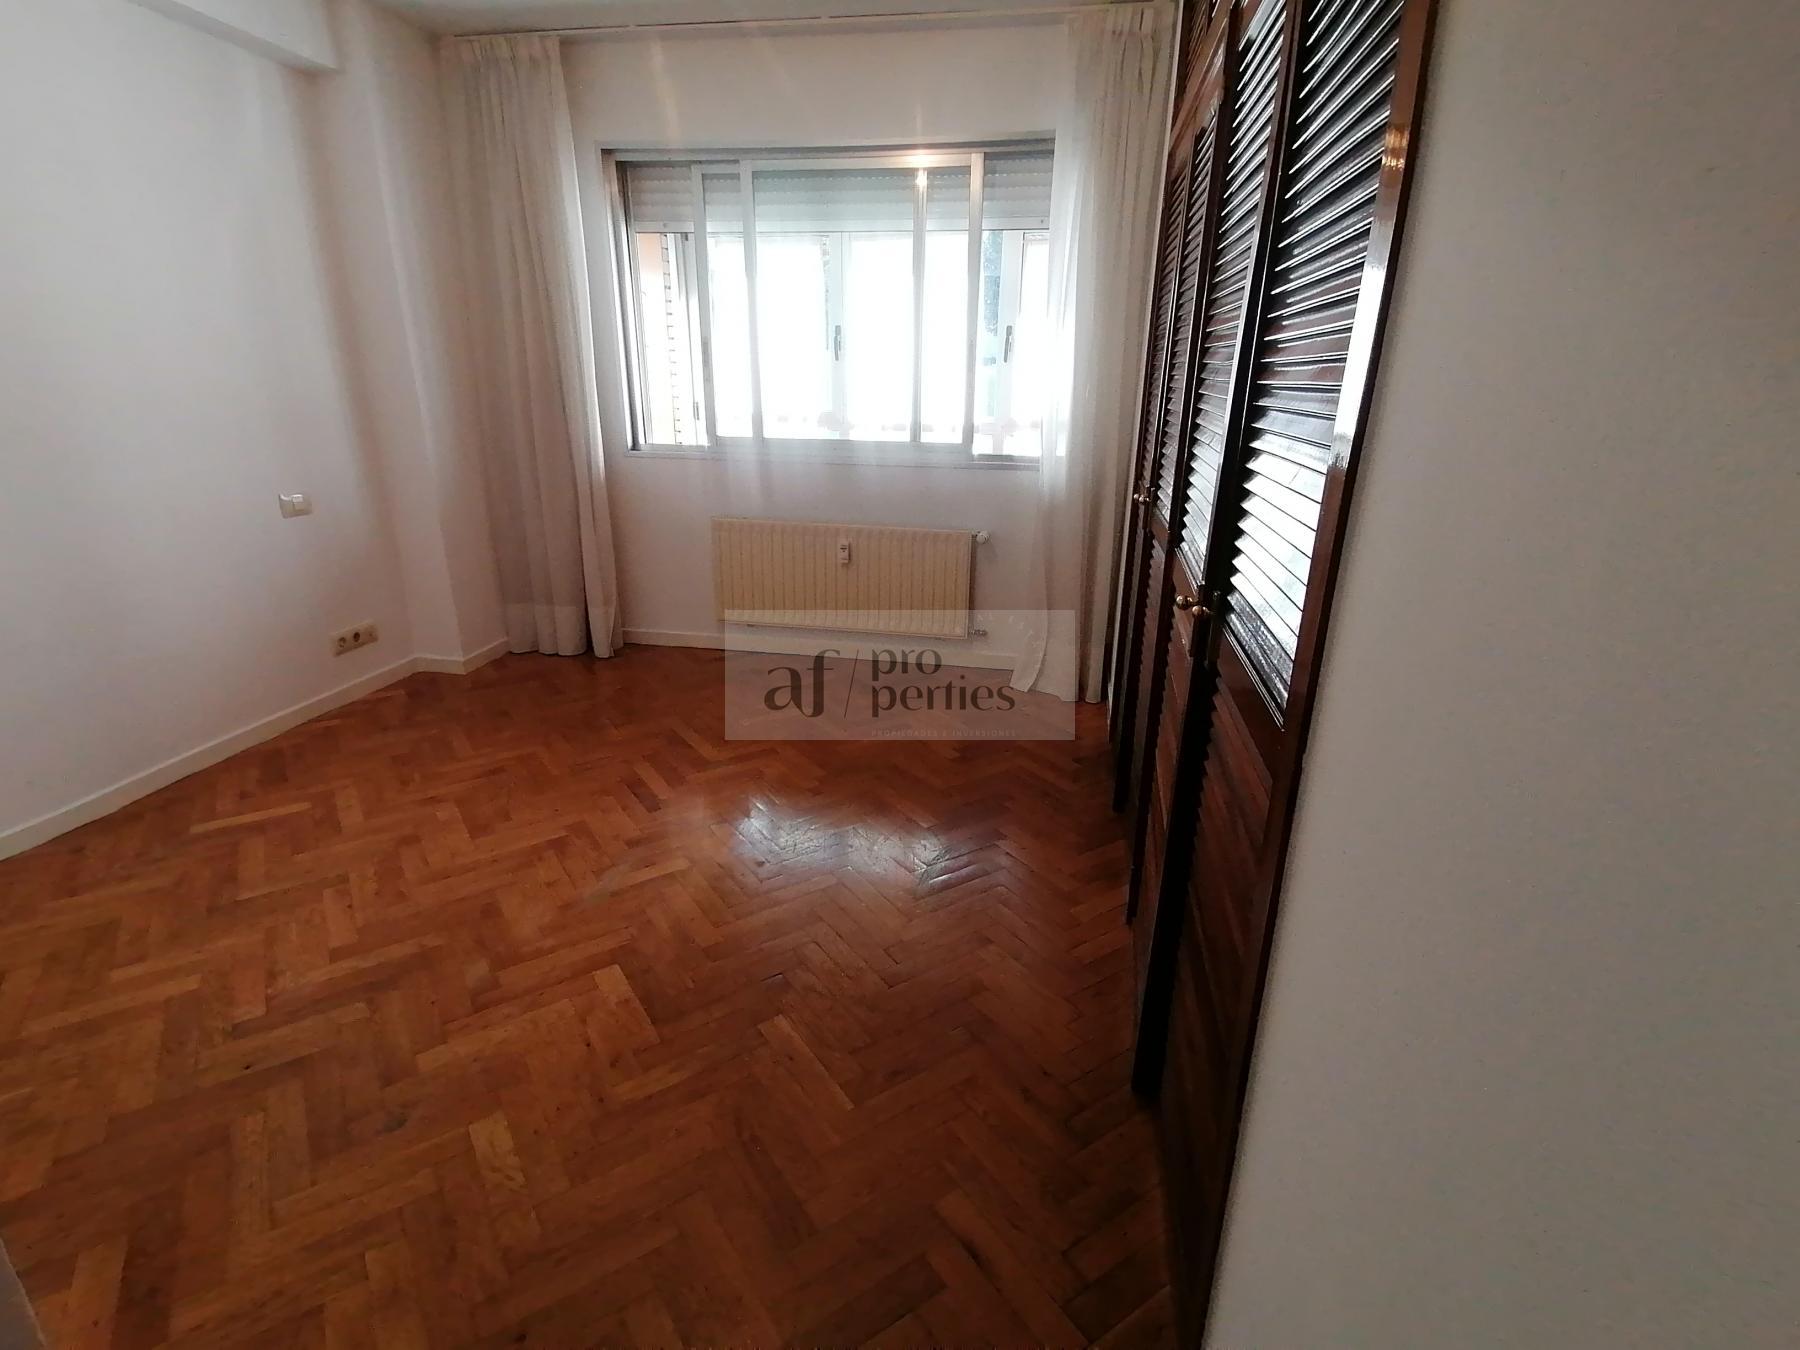 Aluguel de apartamento em Vigo